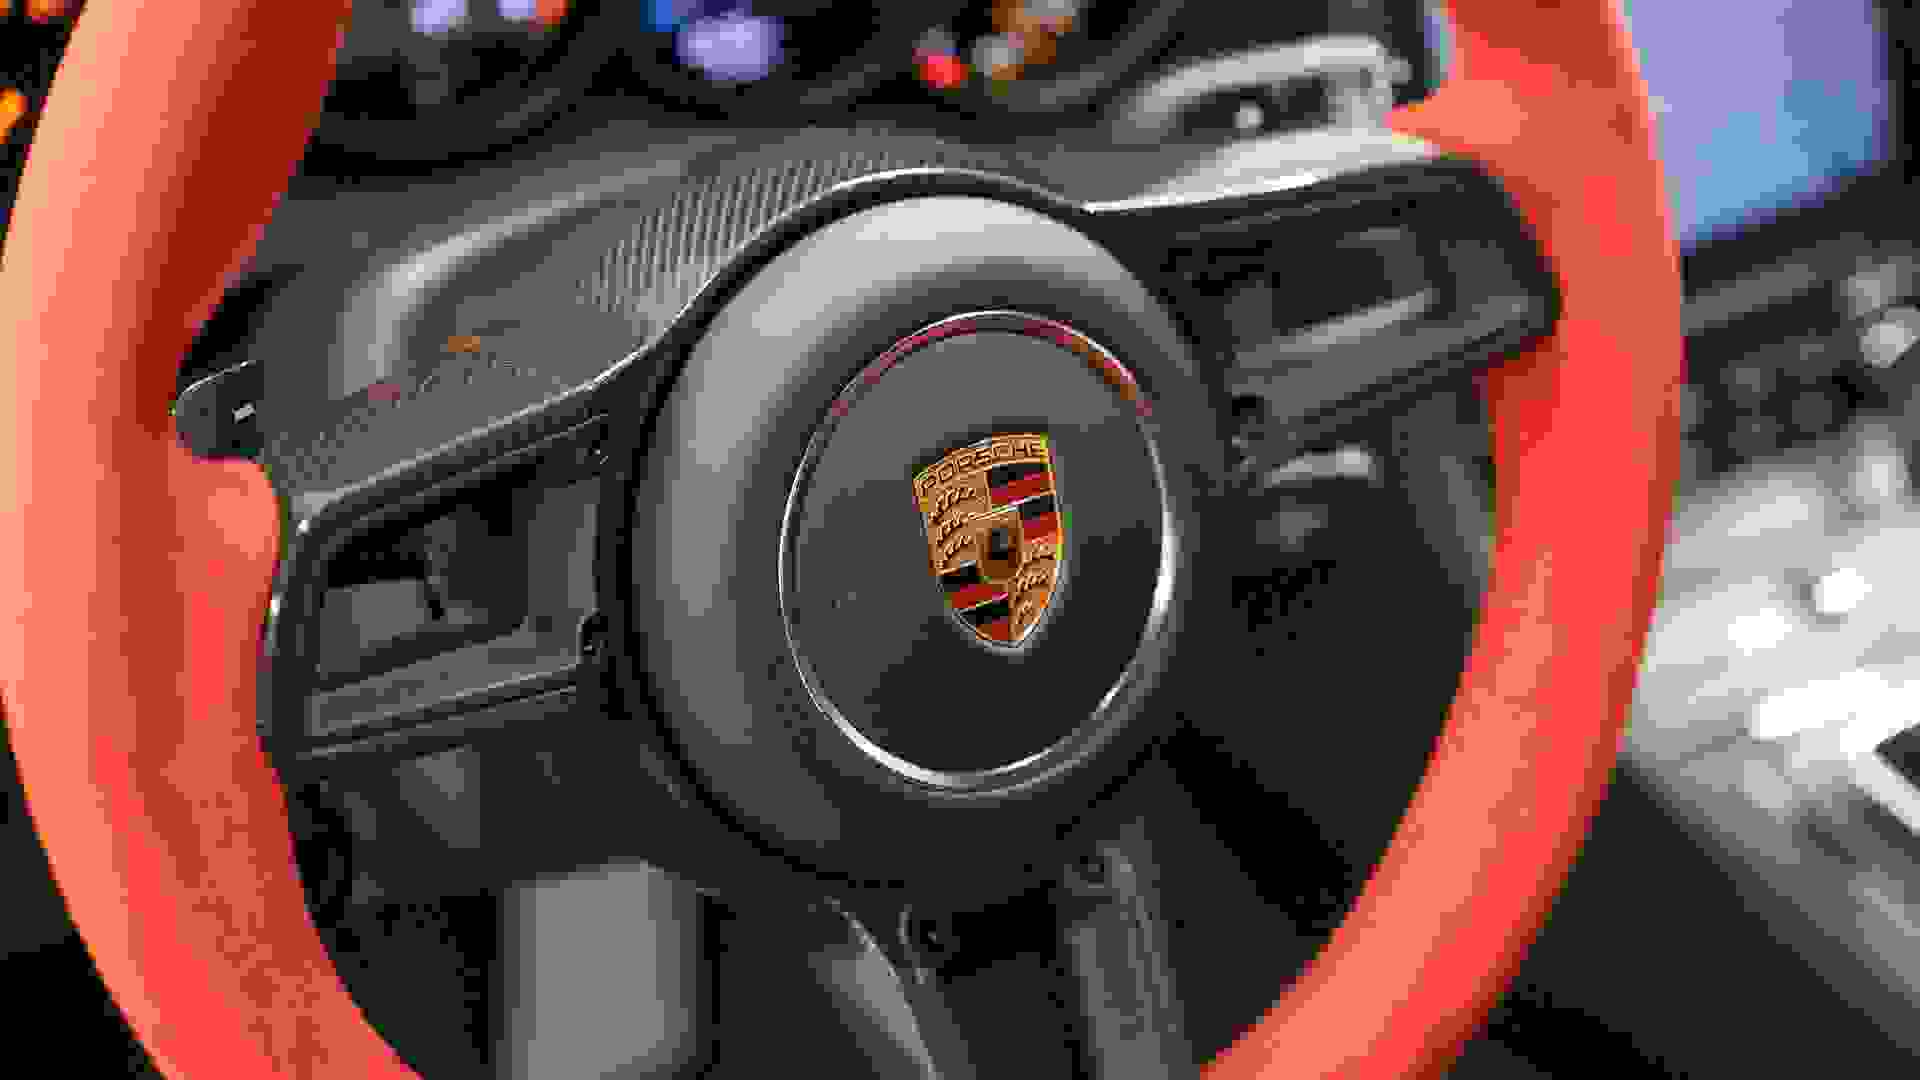 Porsche GT2 RS Weissach Photo 3644d119-a559-44a6-8d05-9c1f69d8e1ae.jpg